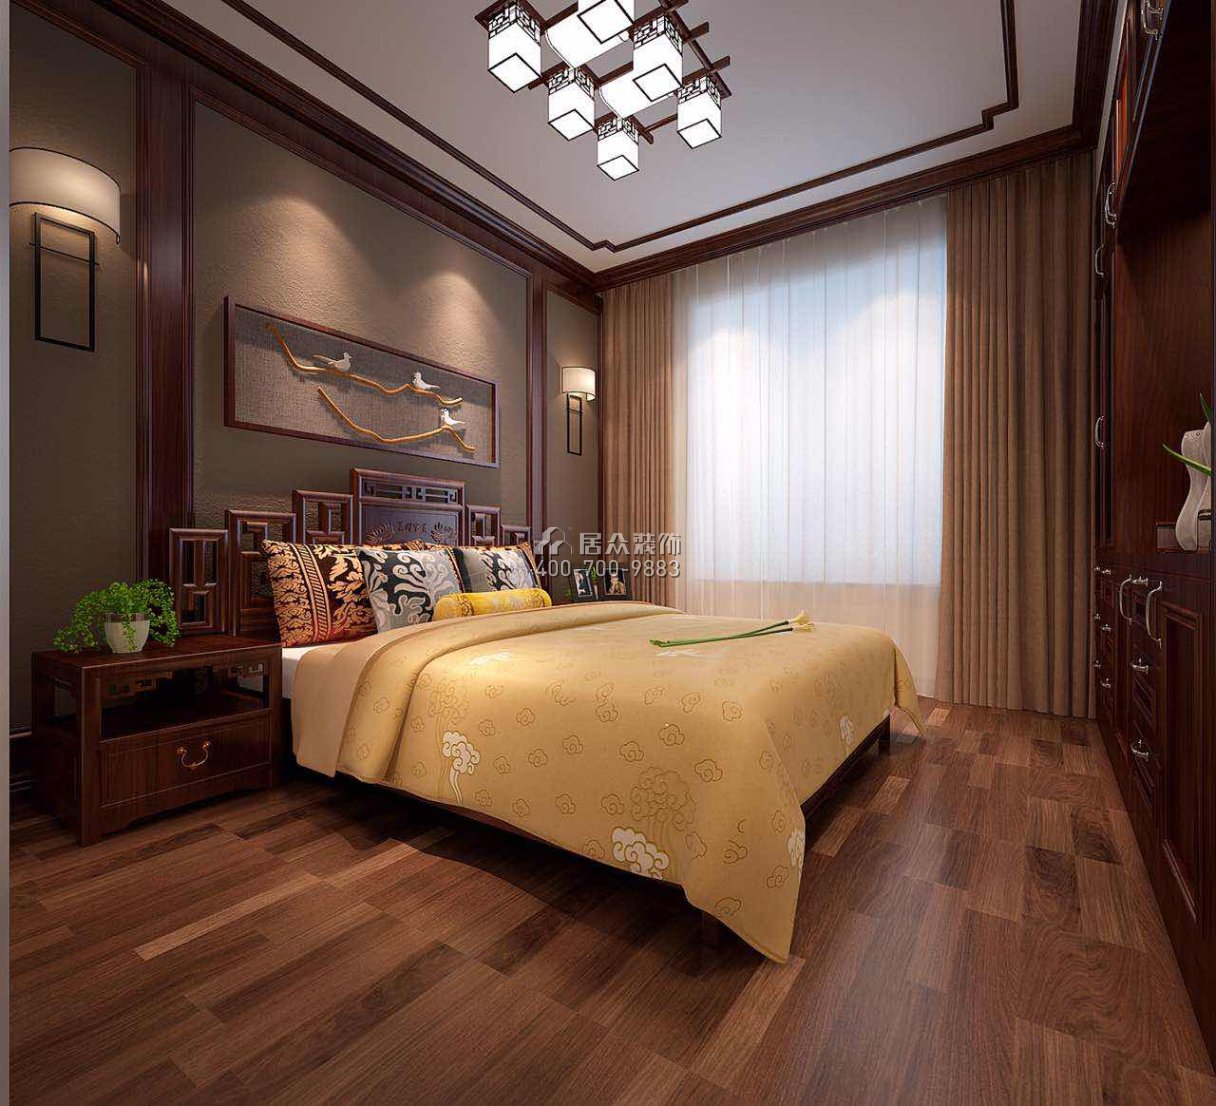 德馨园180平方米中式风格平层户型卧室装修效果图